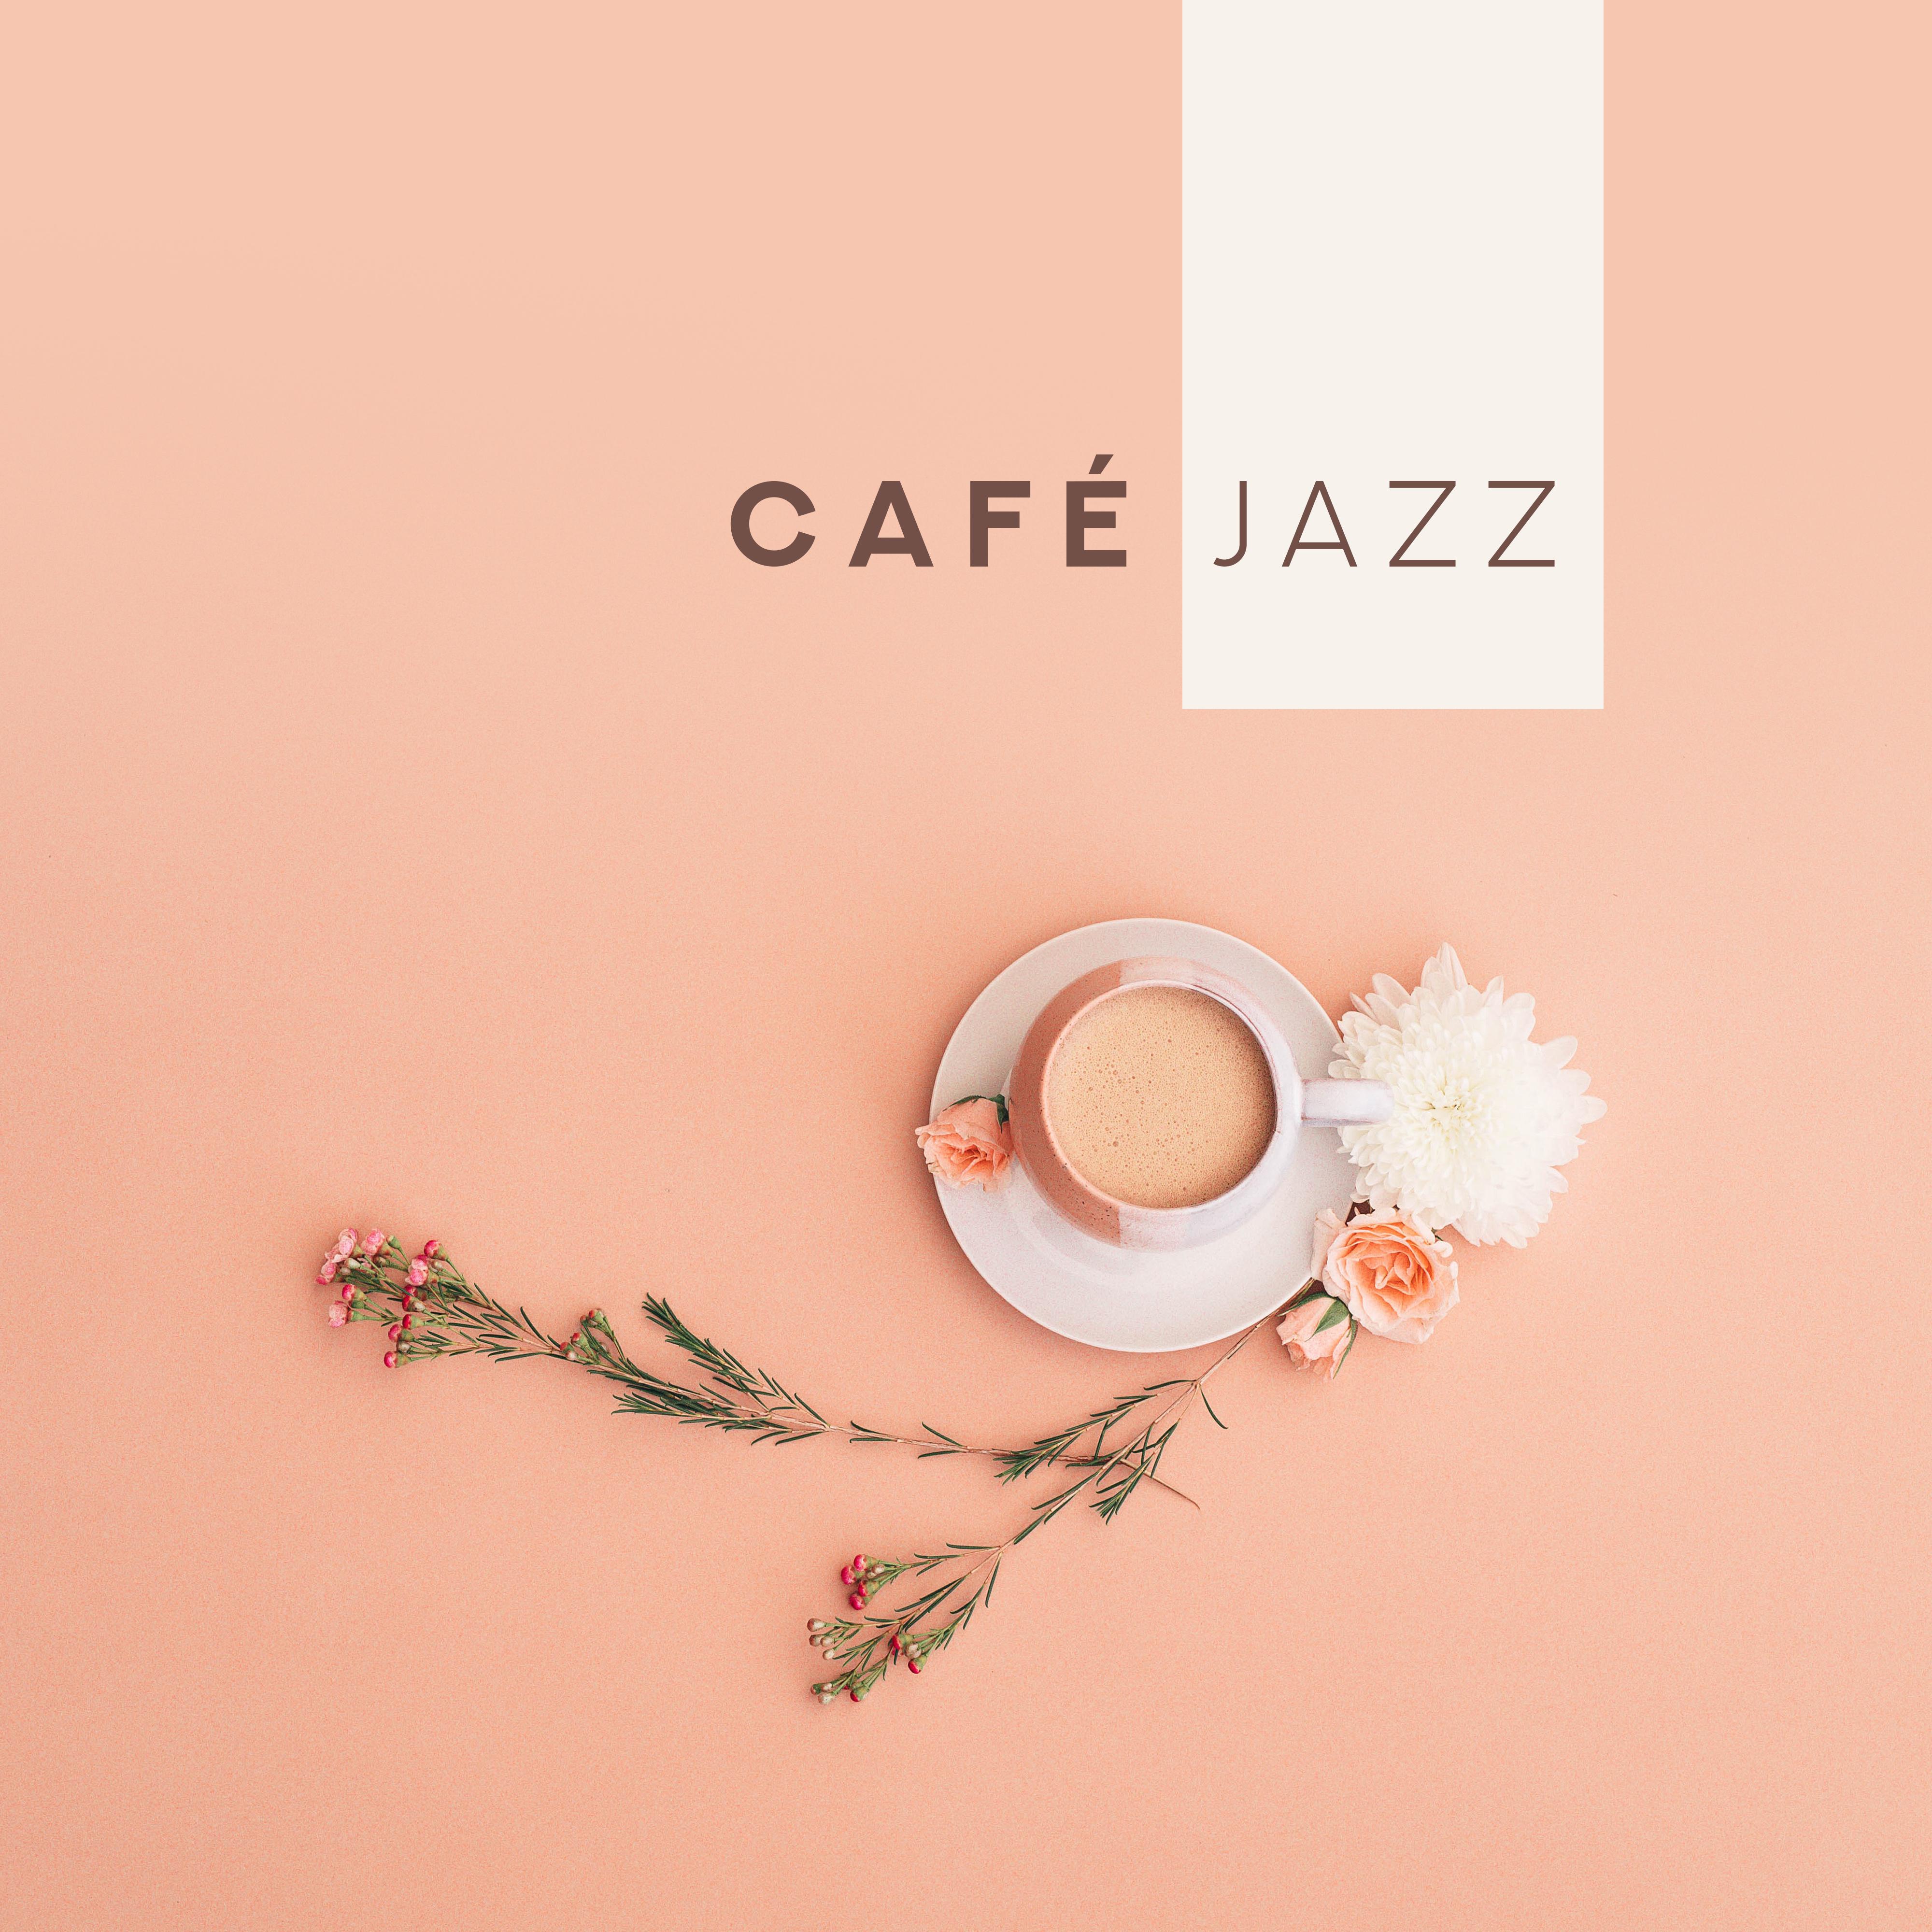 Cafe jazz: Musique relaxante pour le restaurant et le cafe, Bar lounge, Jazz instrumental musique ambient